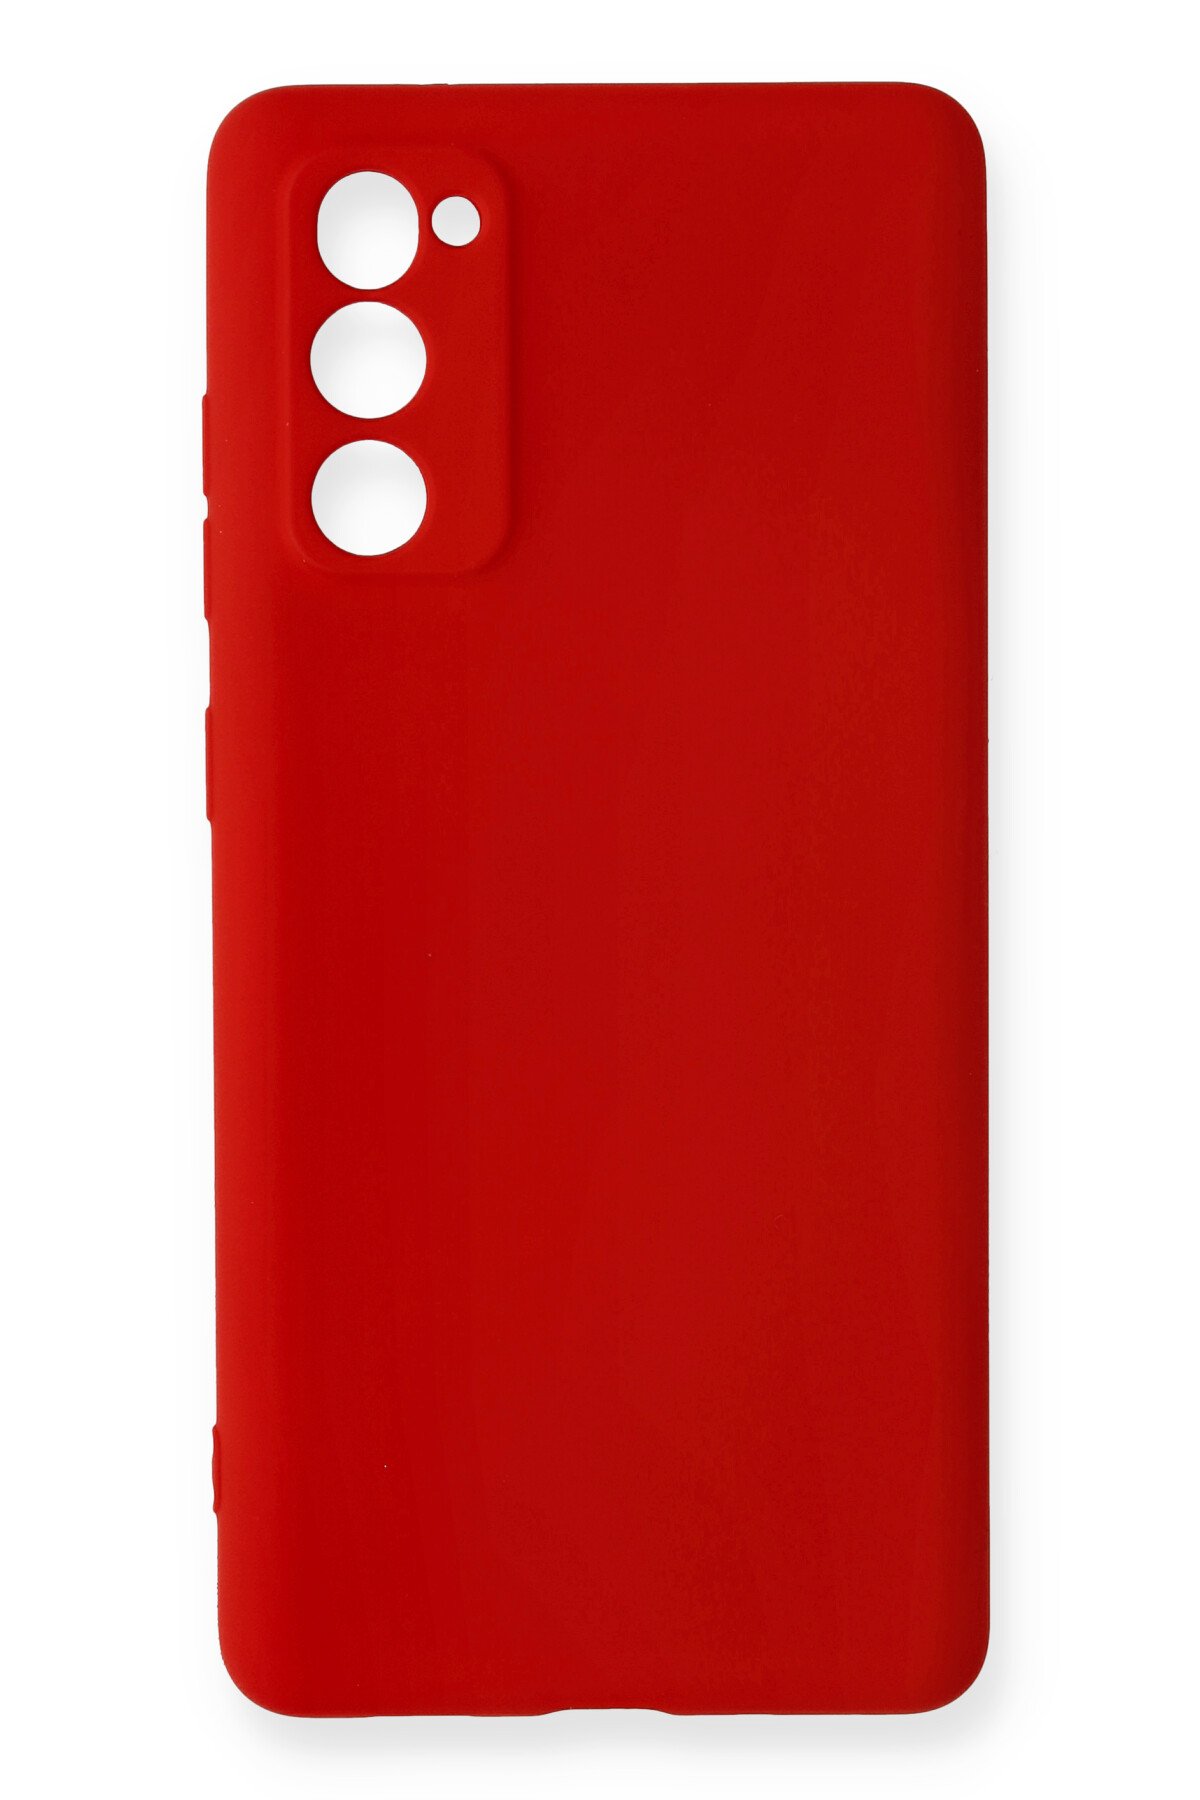 NewFace Newface Samsung Galaxy S20 FE Kılıf Nano içi Kadife Silikon - Kırmızı